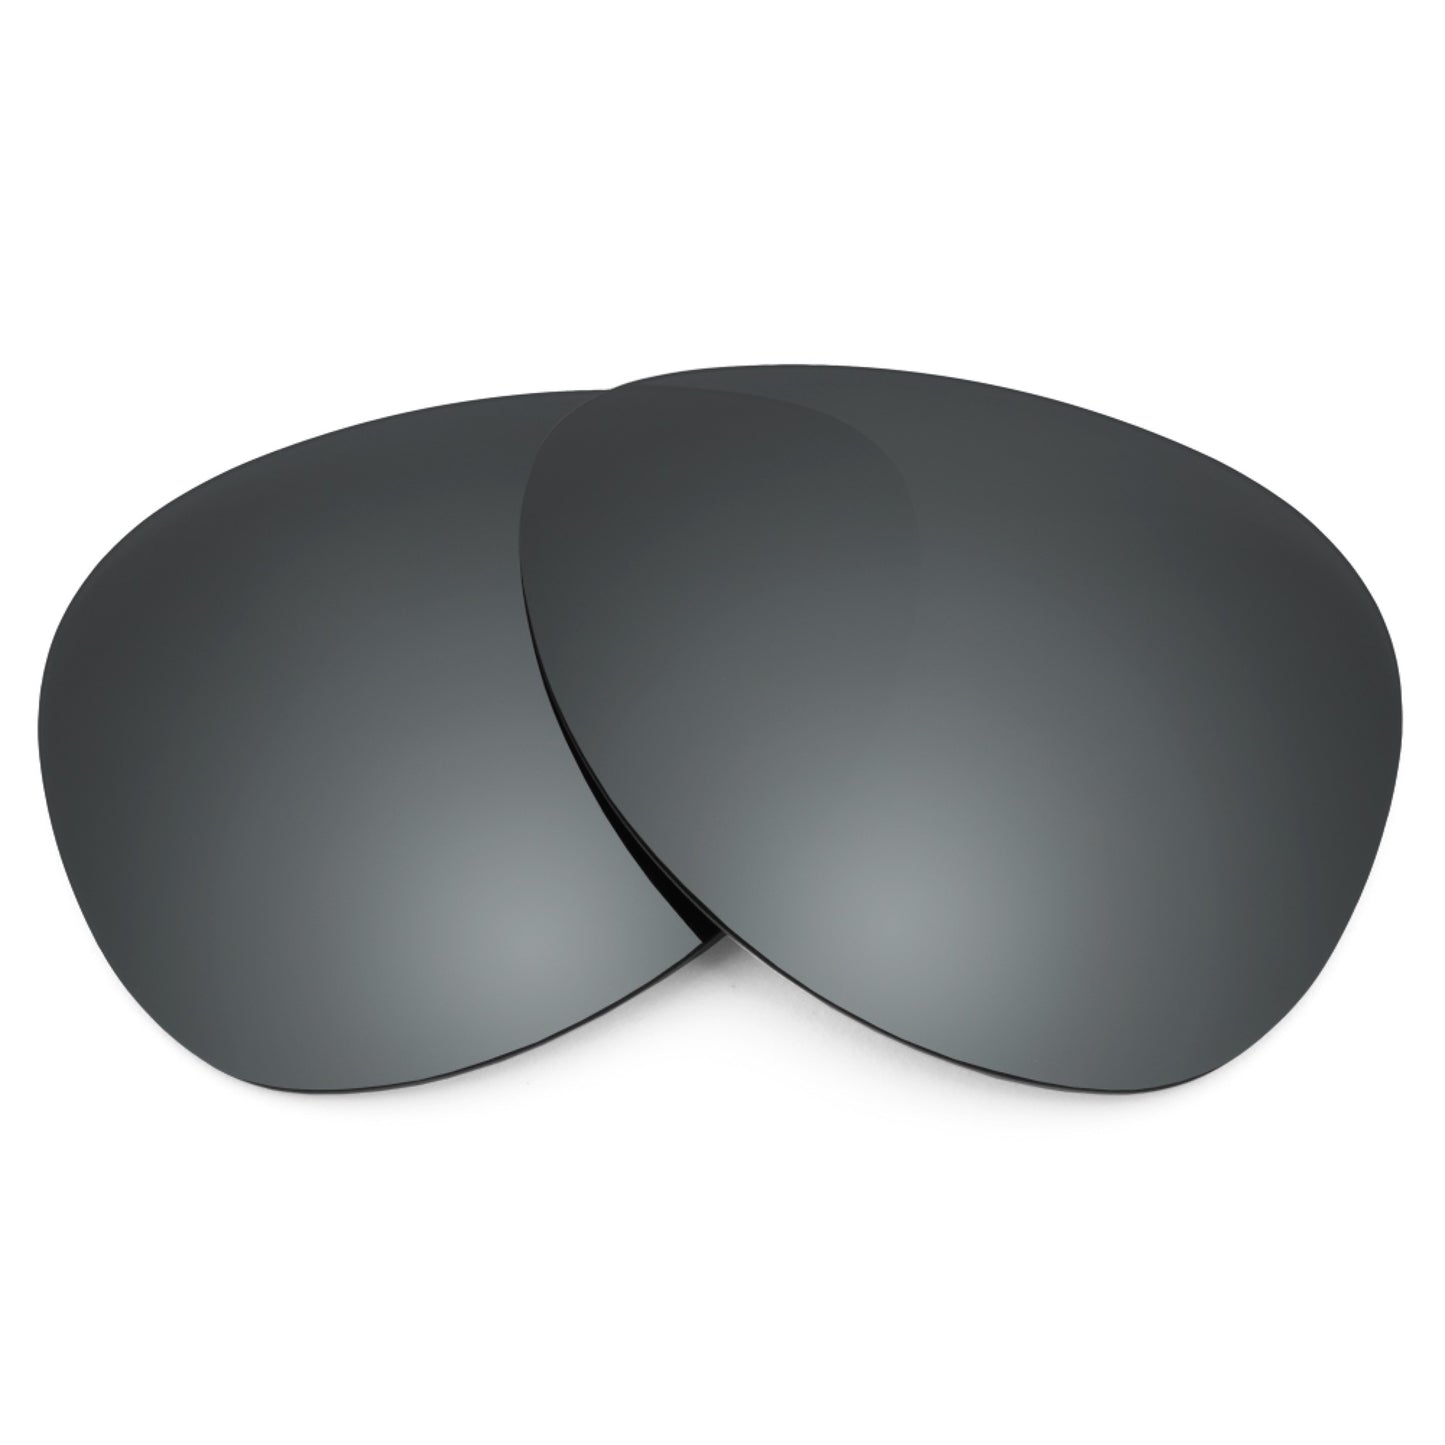 Revant replacement lenses for Ray-Ban Vagabond RB4152 53mm Elite Polarized Black Chrome